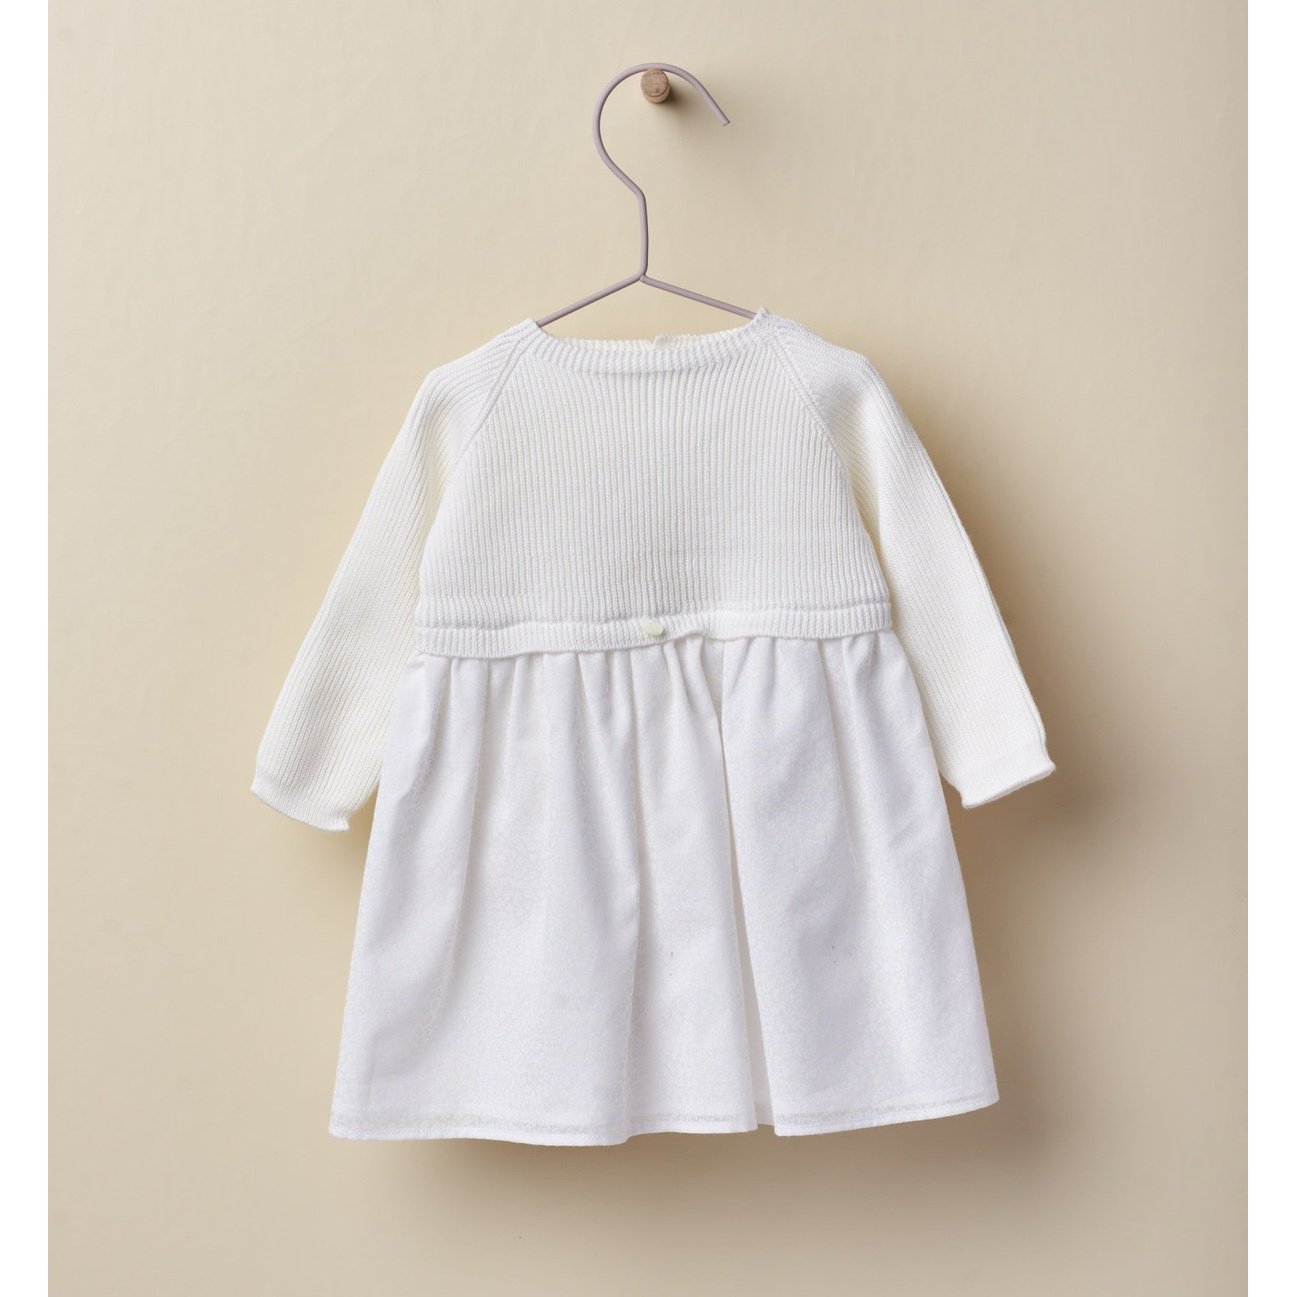 White Knit Dress 113 - Lala Kids 